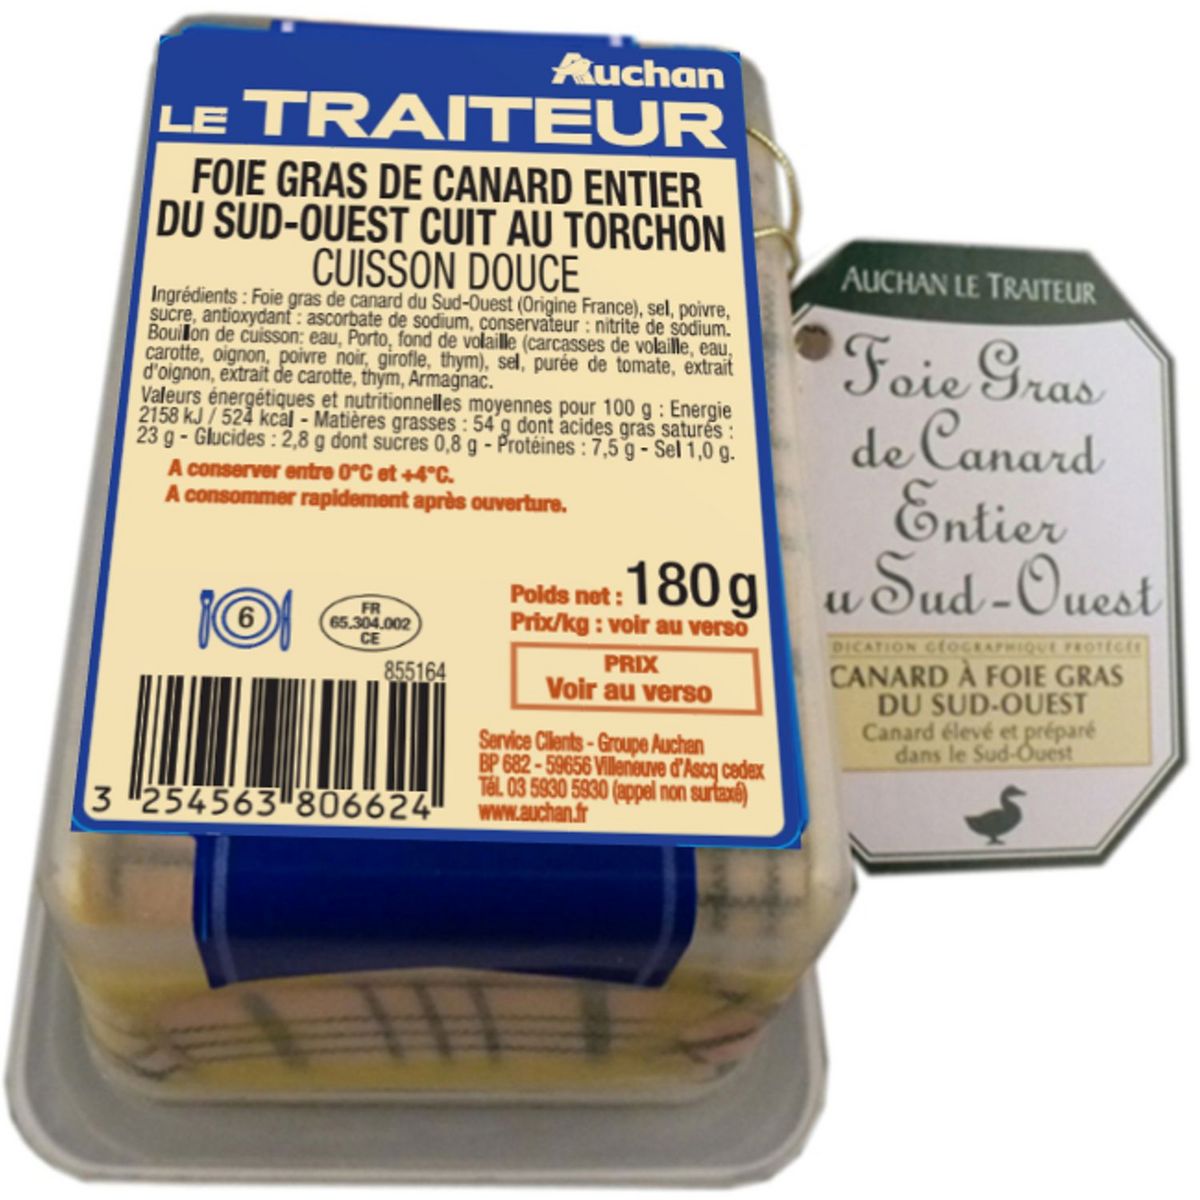 AUCHAN LE TRAITEUR Foie gras entier de canard du Sud-Ouest 6 parts 180g